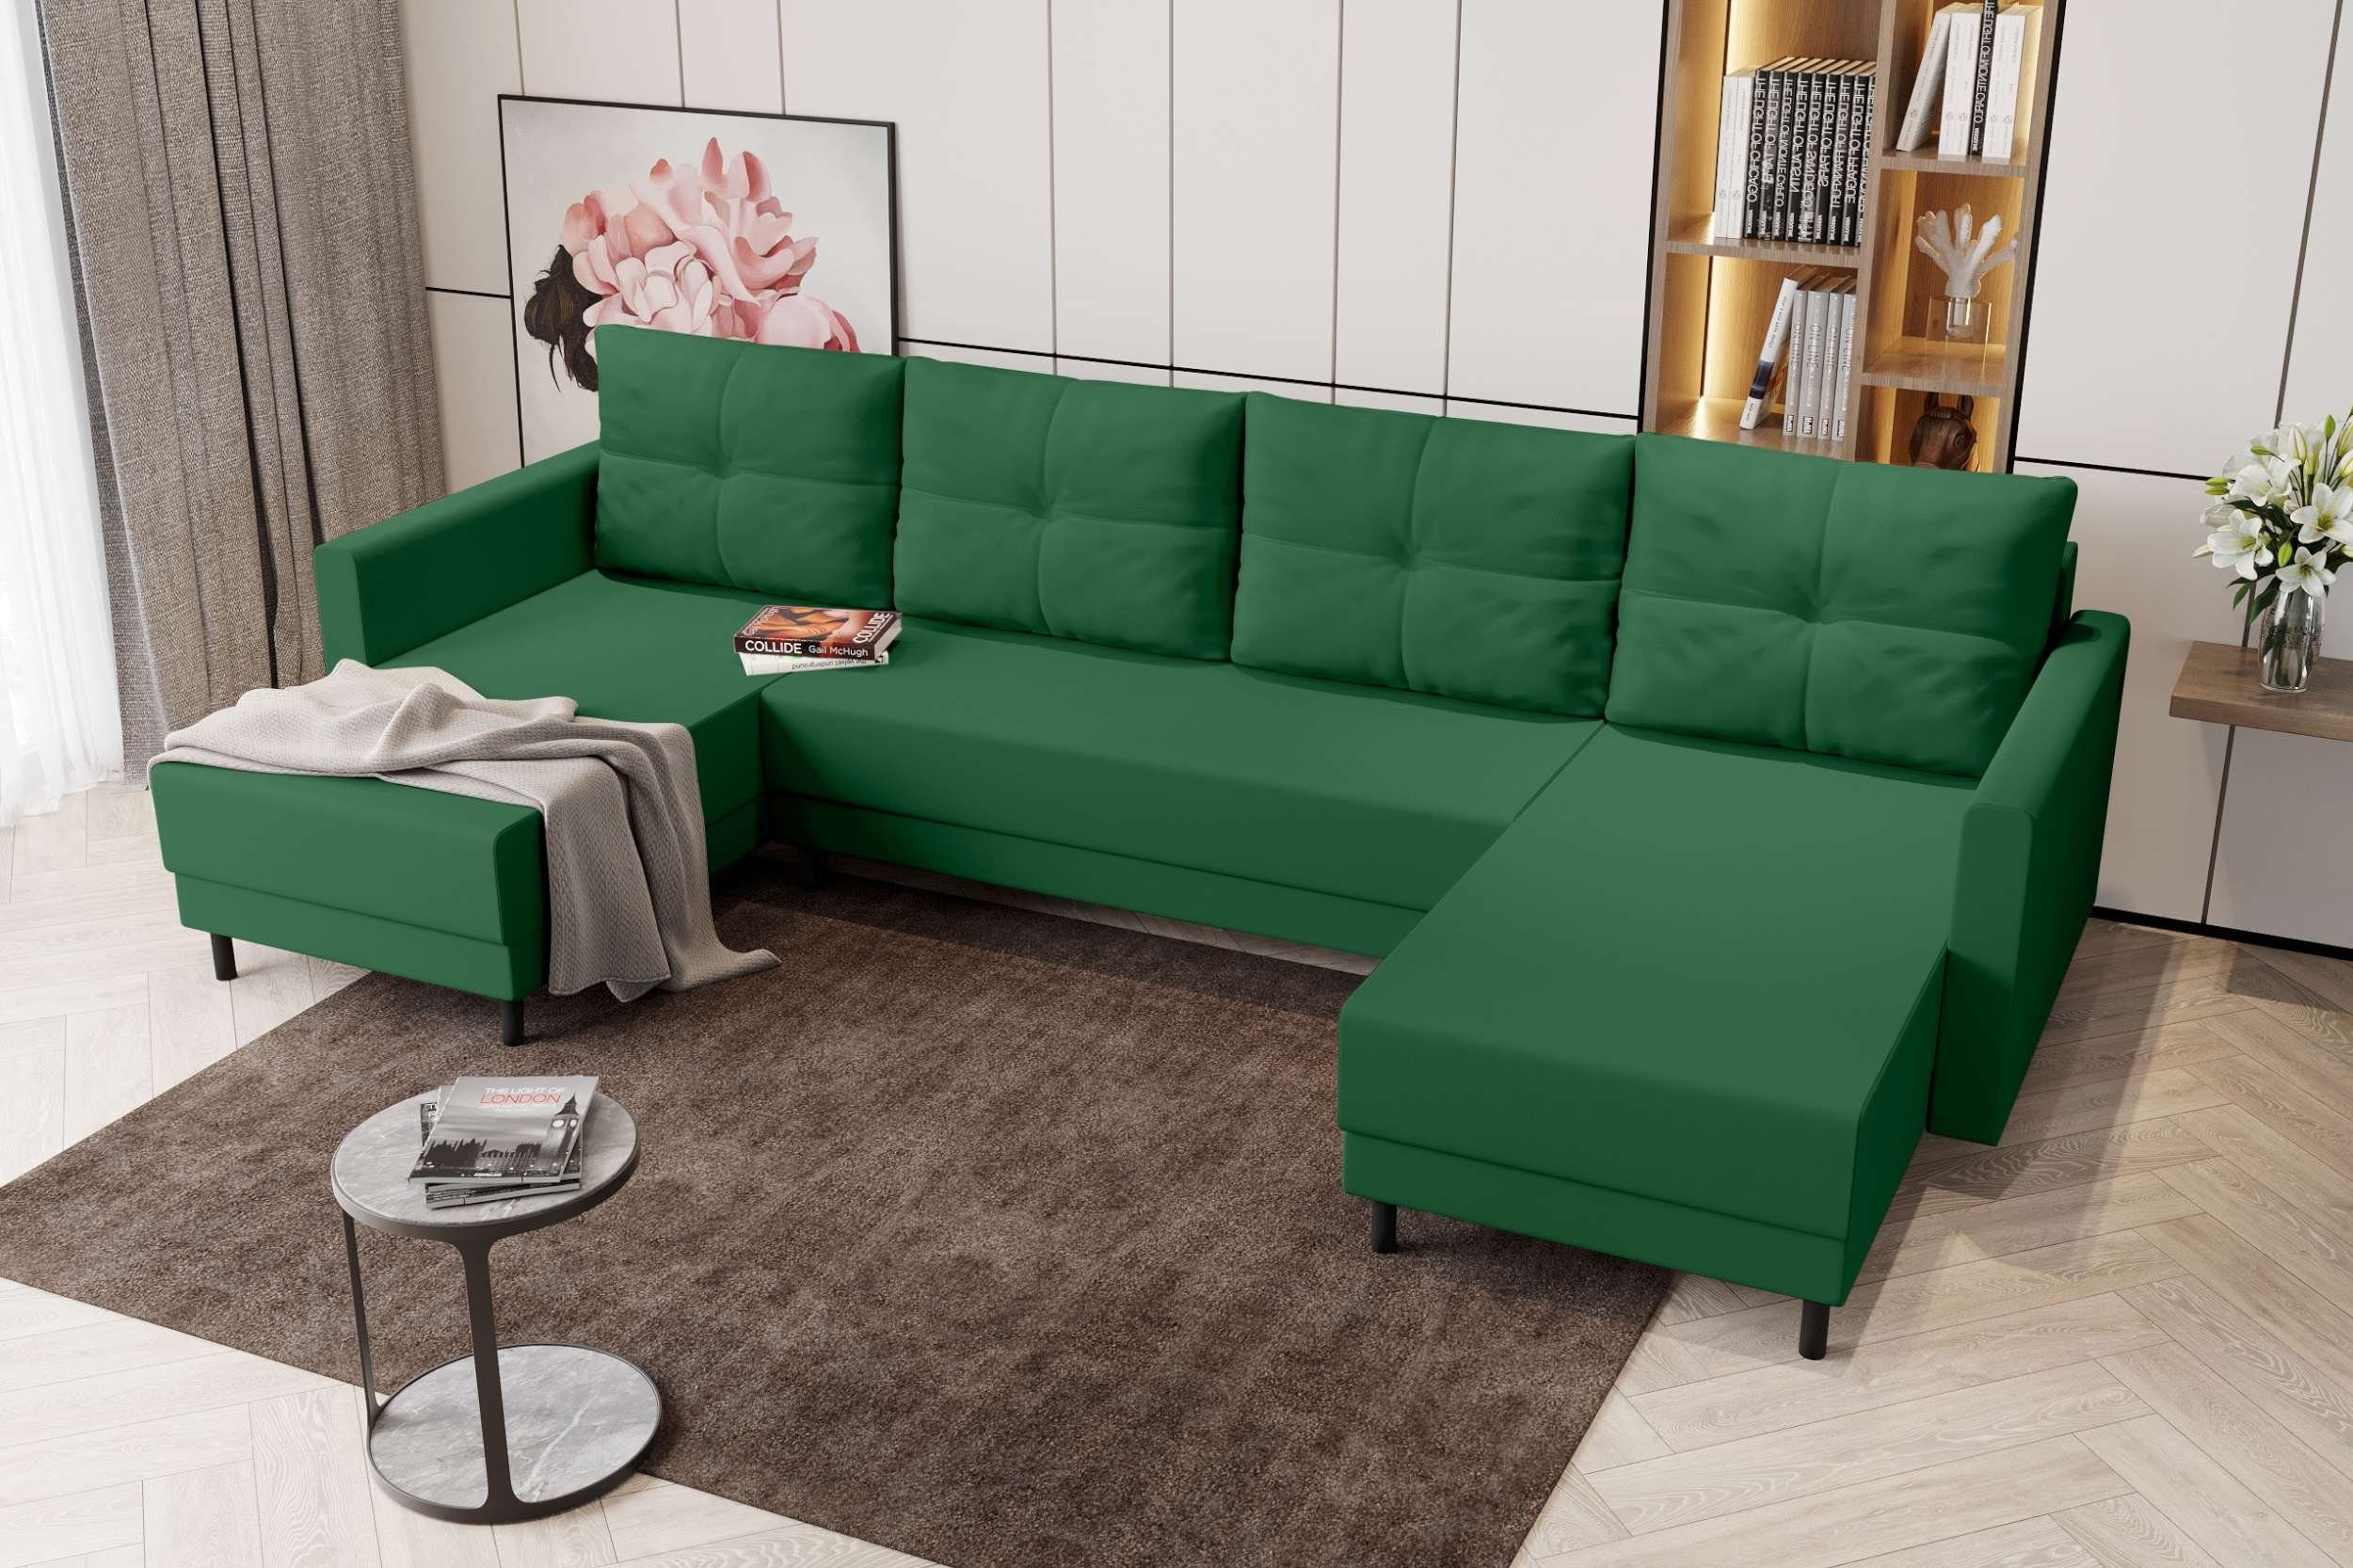 Wohnlandschaft Sitzkomfort, Bettfunktion, Stylefy U-Form, Bettkasten, mit Eckcouch, Selena, Sofa, Modern mit Design